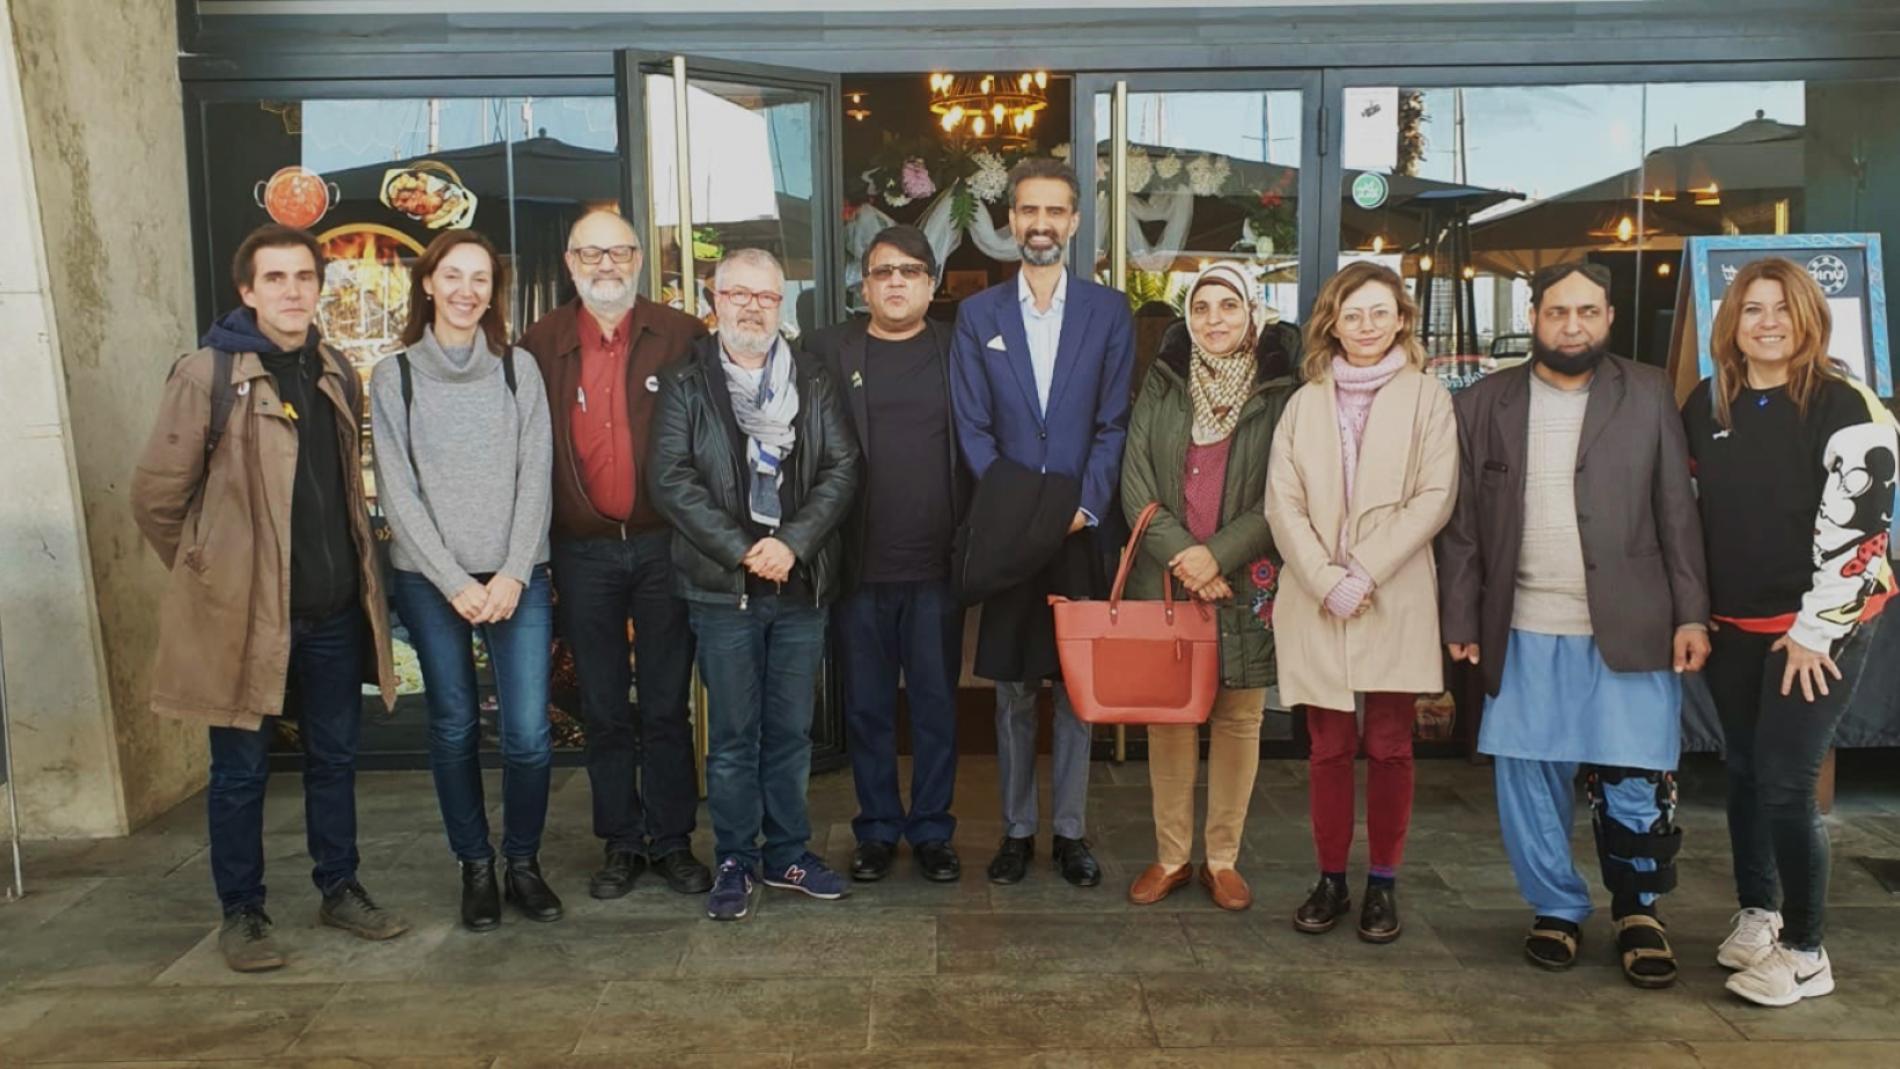 Proyecto piloto de la estrategia de microeliminación de la hepatitis C en inmigrantes paquistaníes en Cataluña mediante una intervención comunitaria